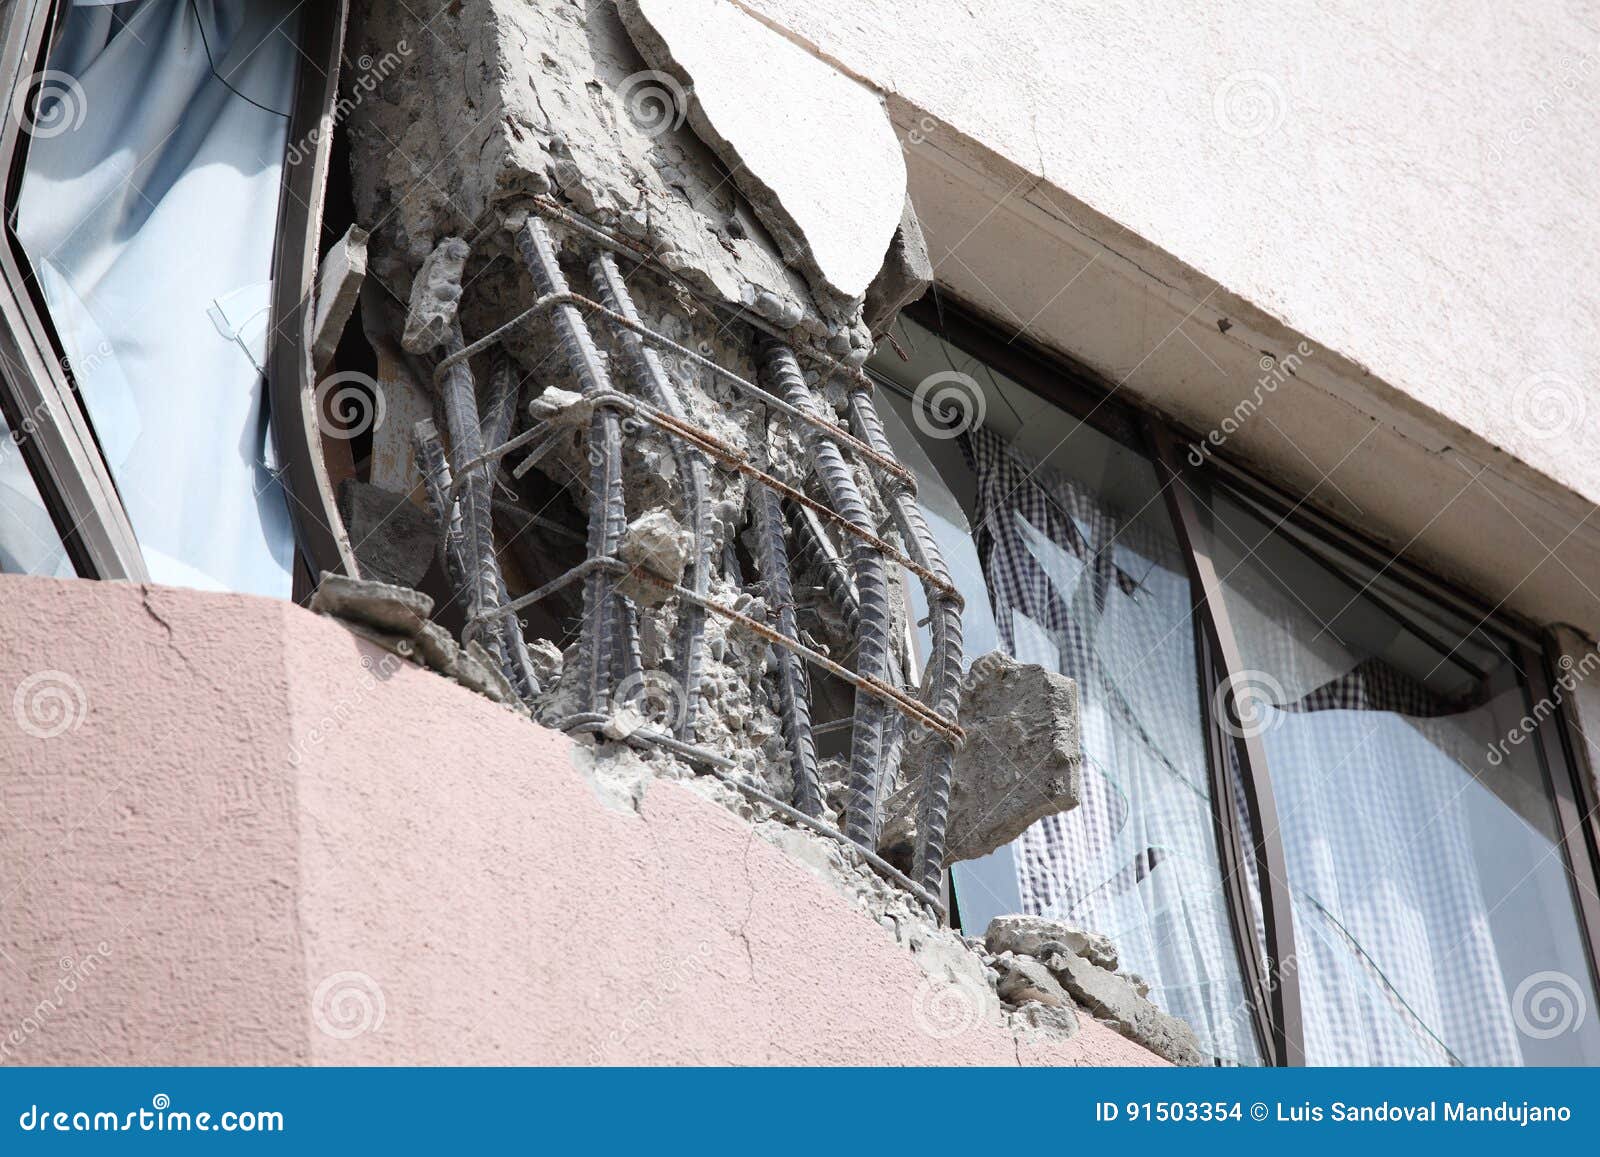 chile earthquake damage